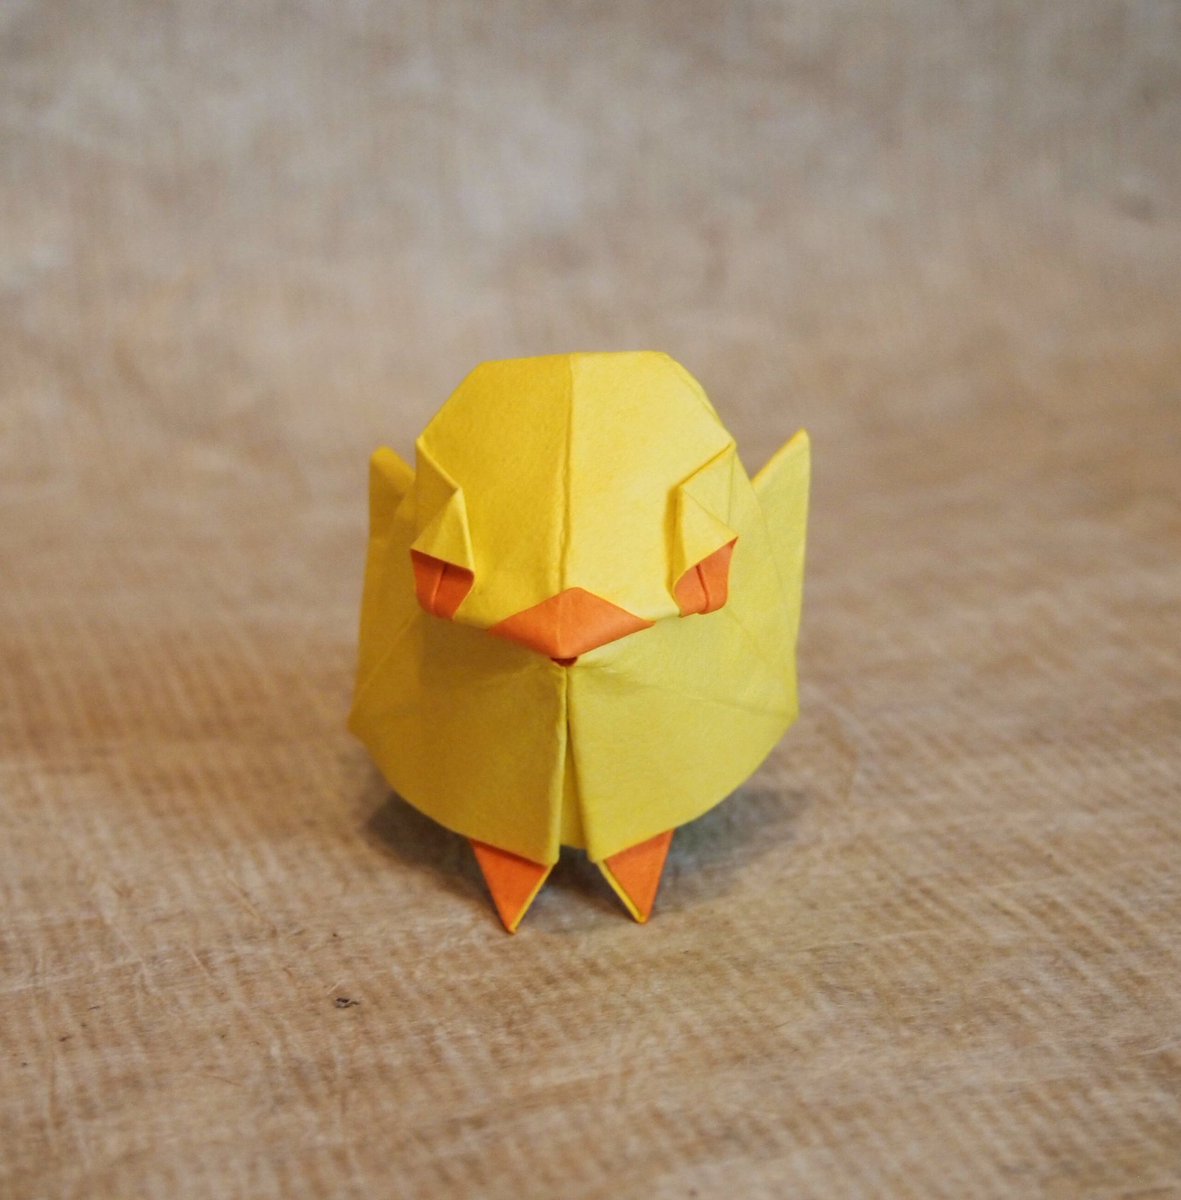 一匹柴犬 على تويتر 折り紙作品 ひよこ 創作 折り 一匹柴犬 数年前に折ったヒヨコが無理矢理仕上げであまり納得できてなかったので再トライ シンプルにかわいいデザインにできました 魚の基本的より Origami Chick 折り紙作品 折り紙 ひよこ T